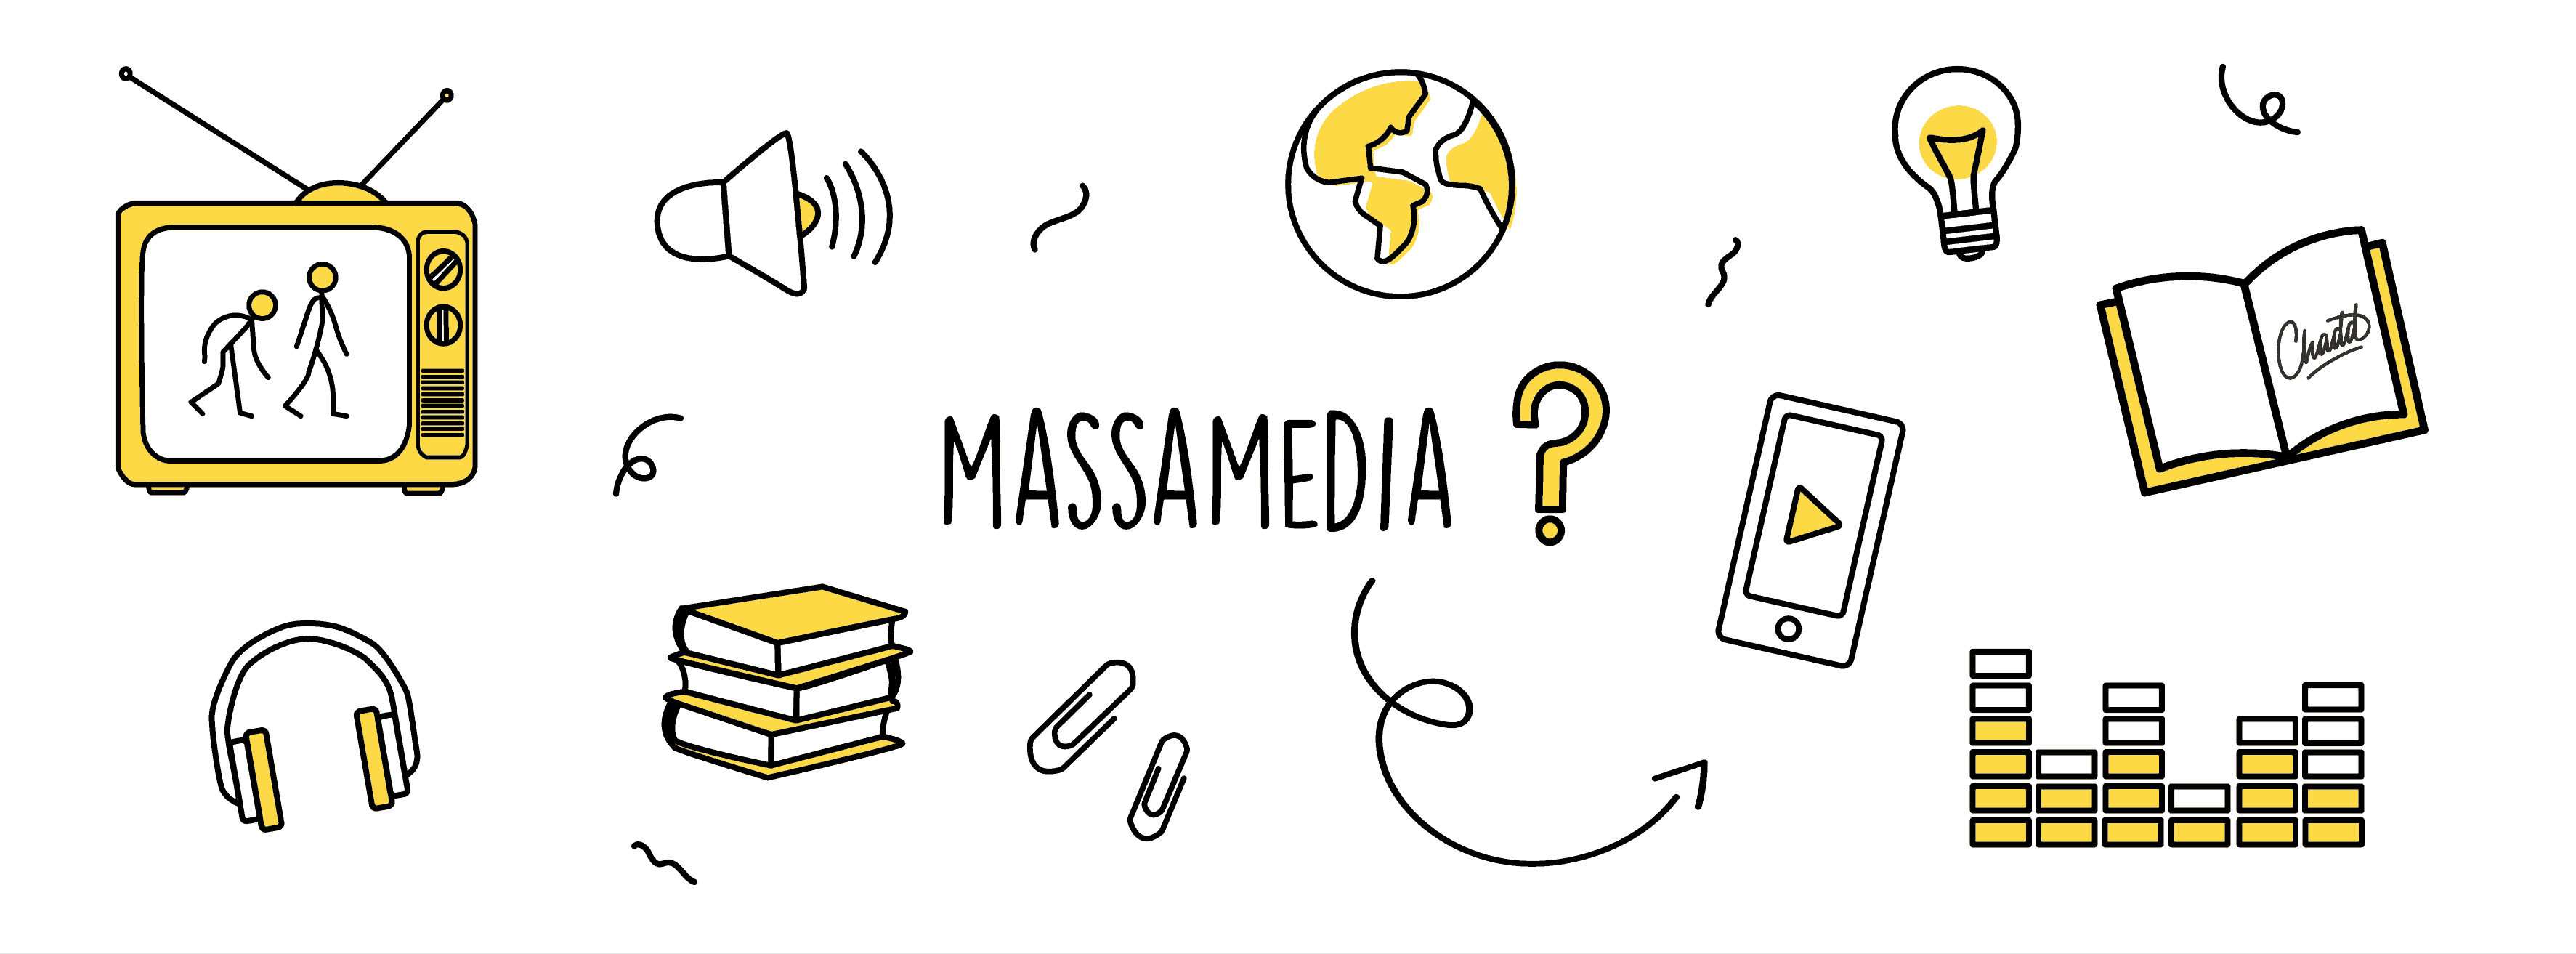 Massamedia